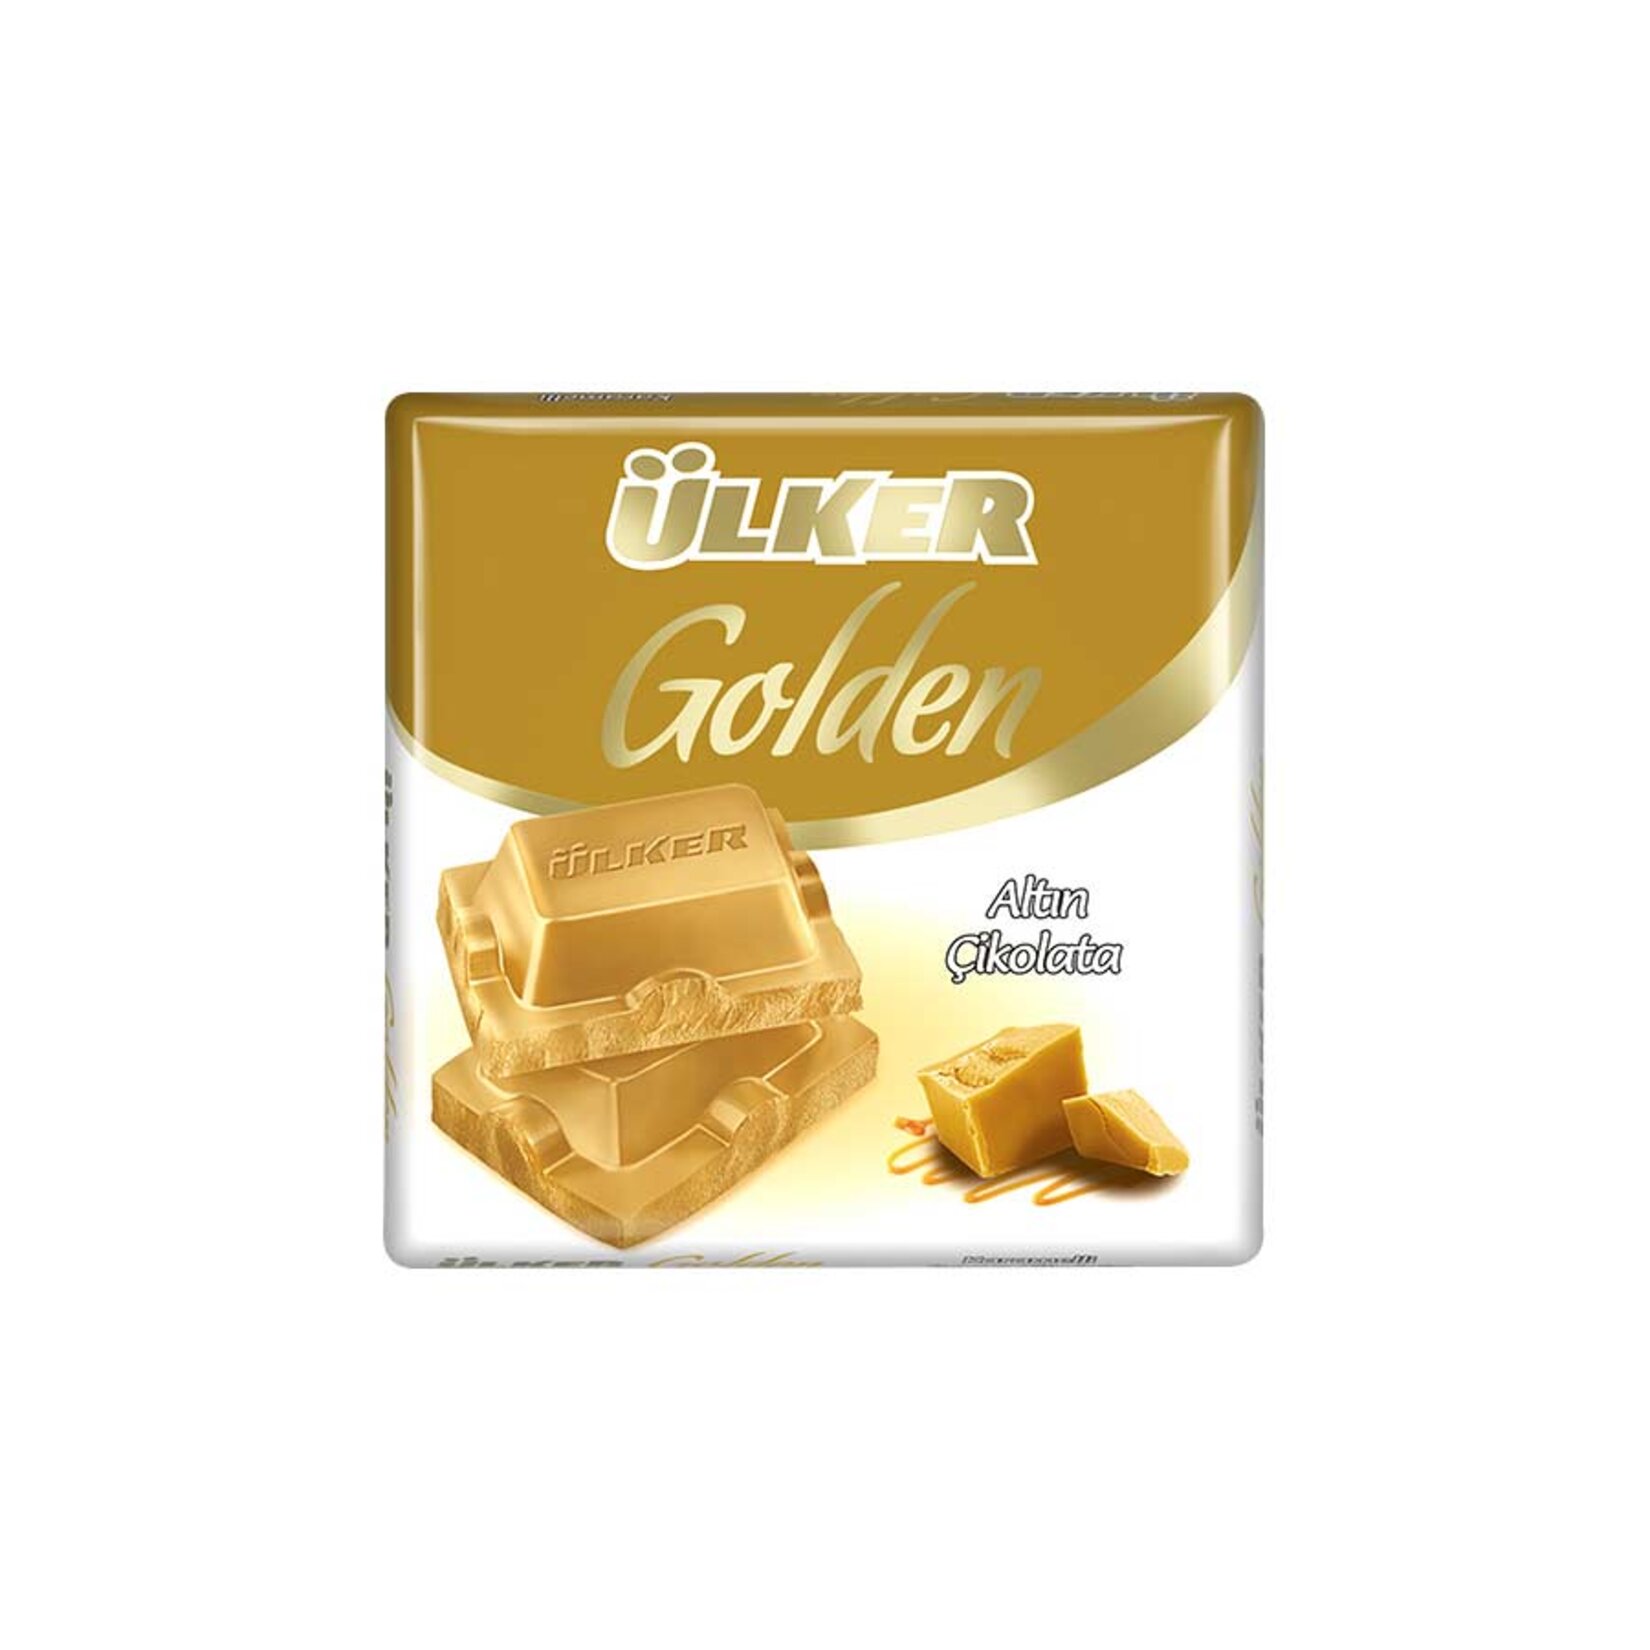 Ülker Golden Caramel White Square Chocolate 60 g / 2.12 oz 